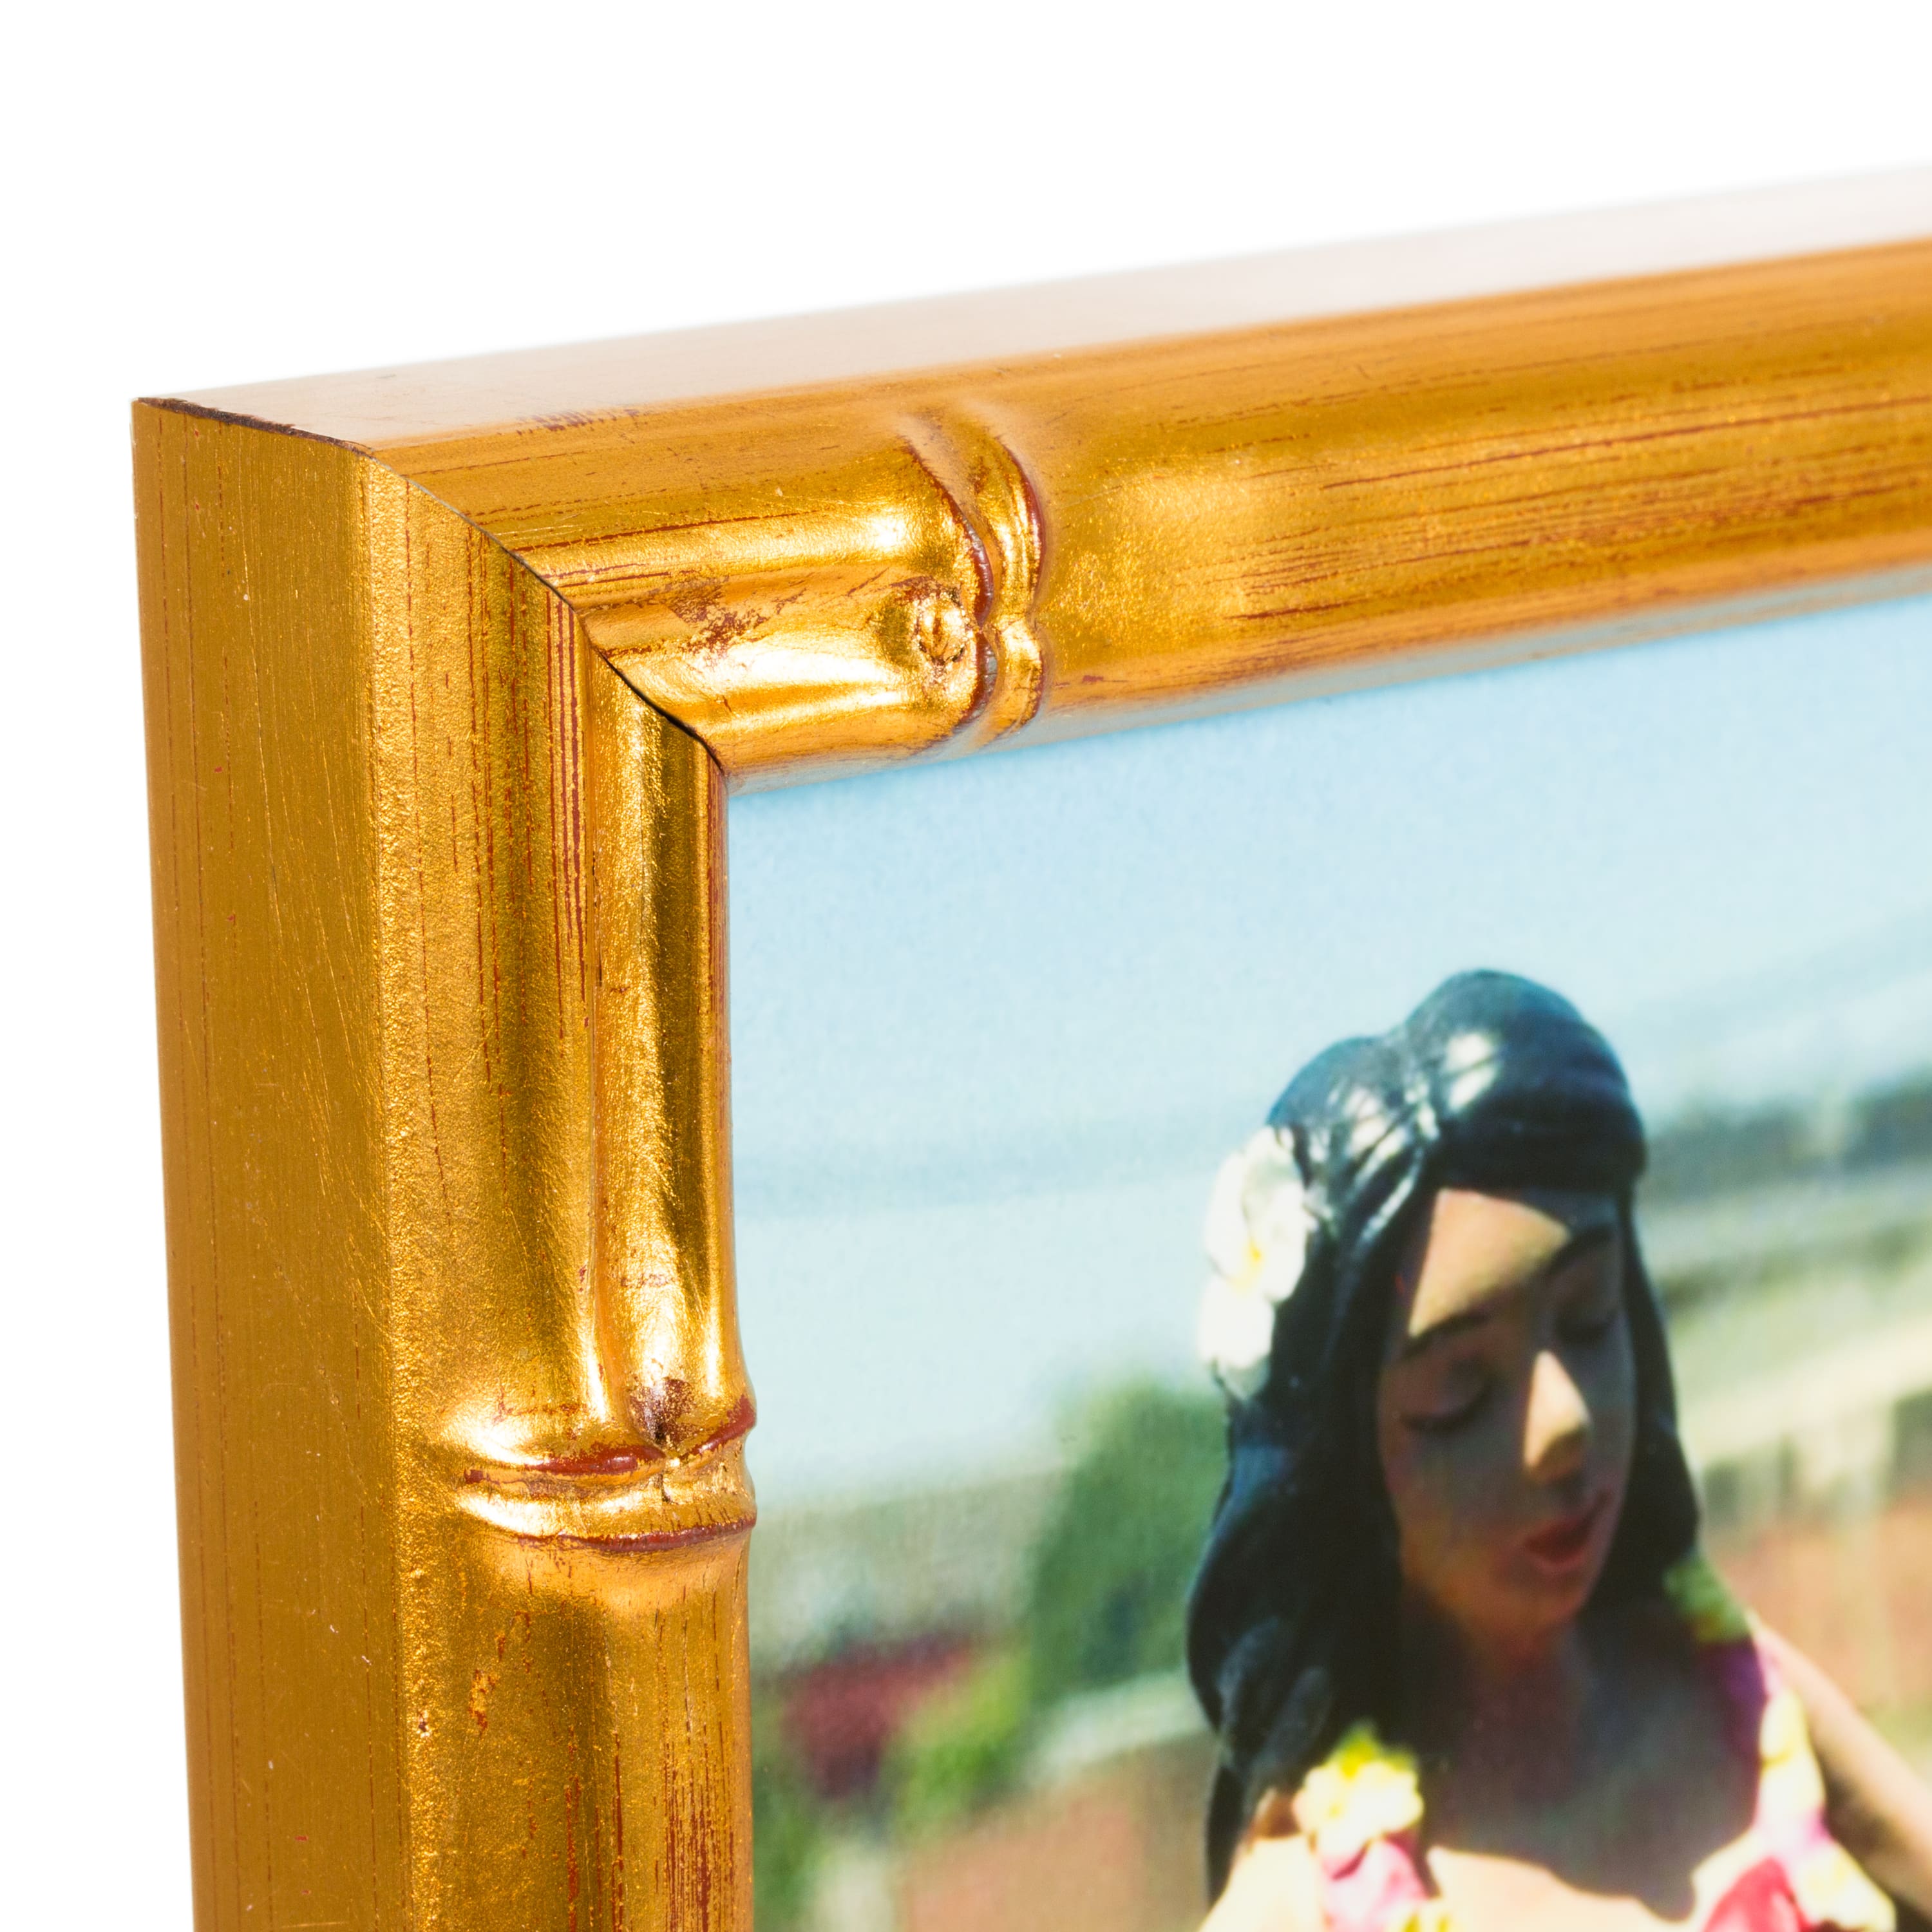 4 Pack Craig Frames Vintage Bamboo Brushed Gold Picture Frame